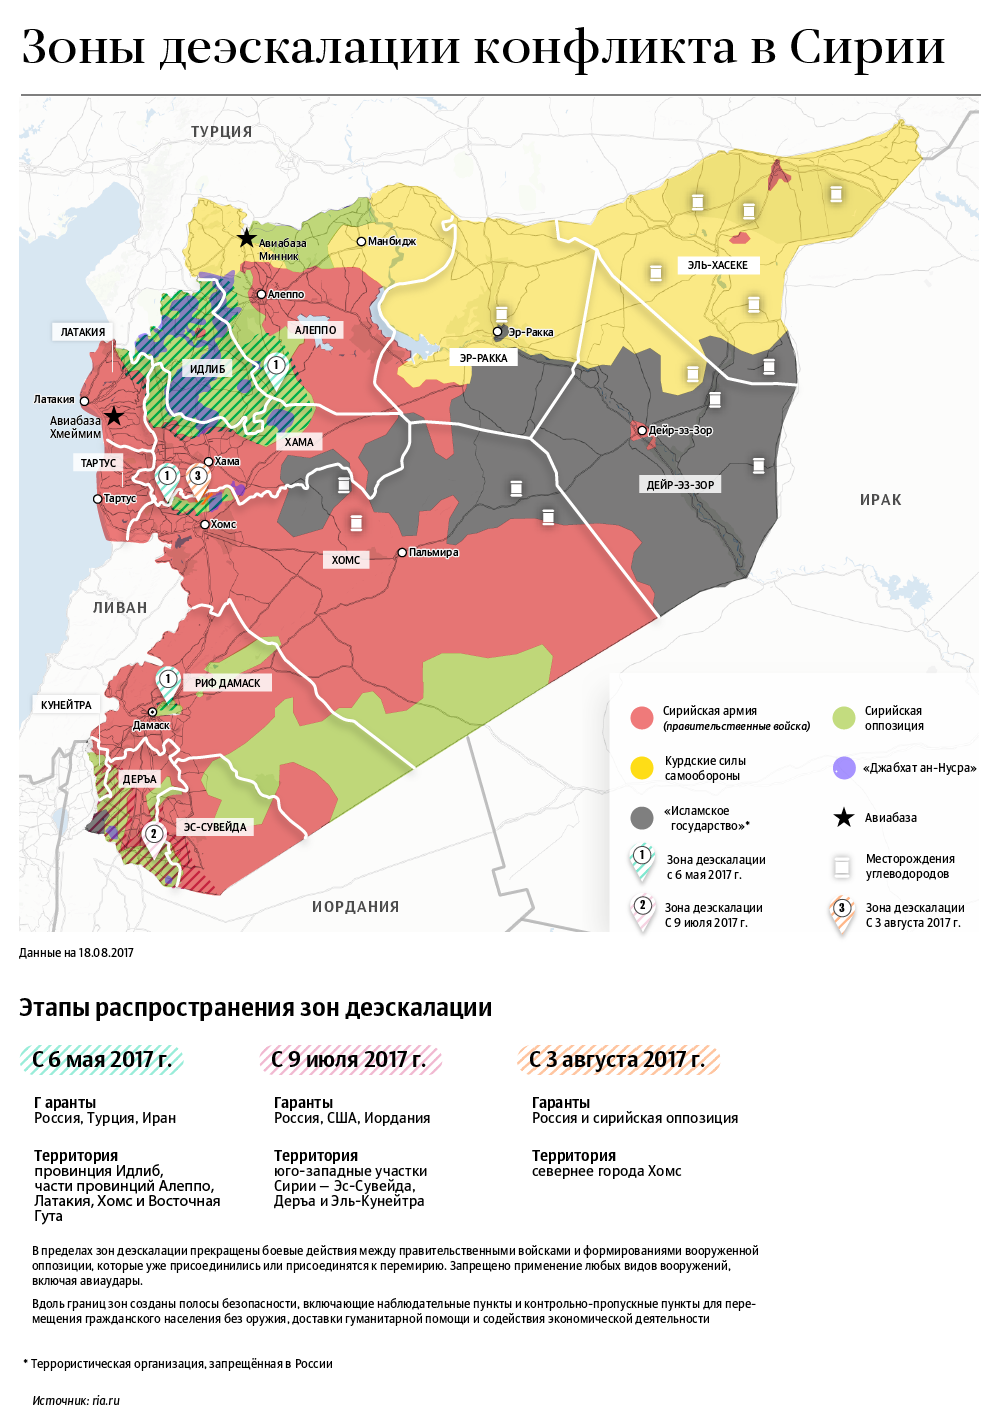 Зоны деэскалации конфликта в Сирии